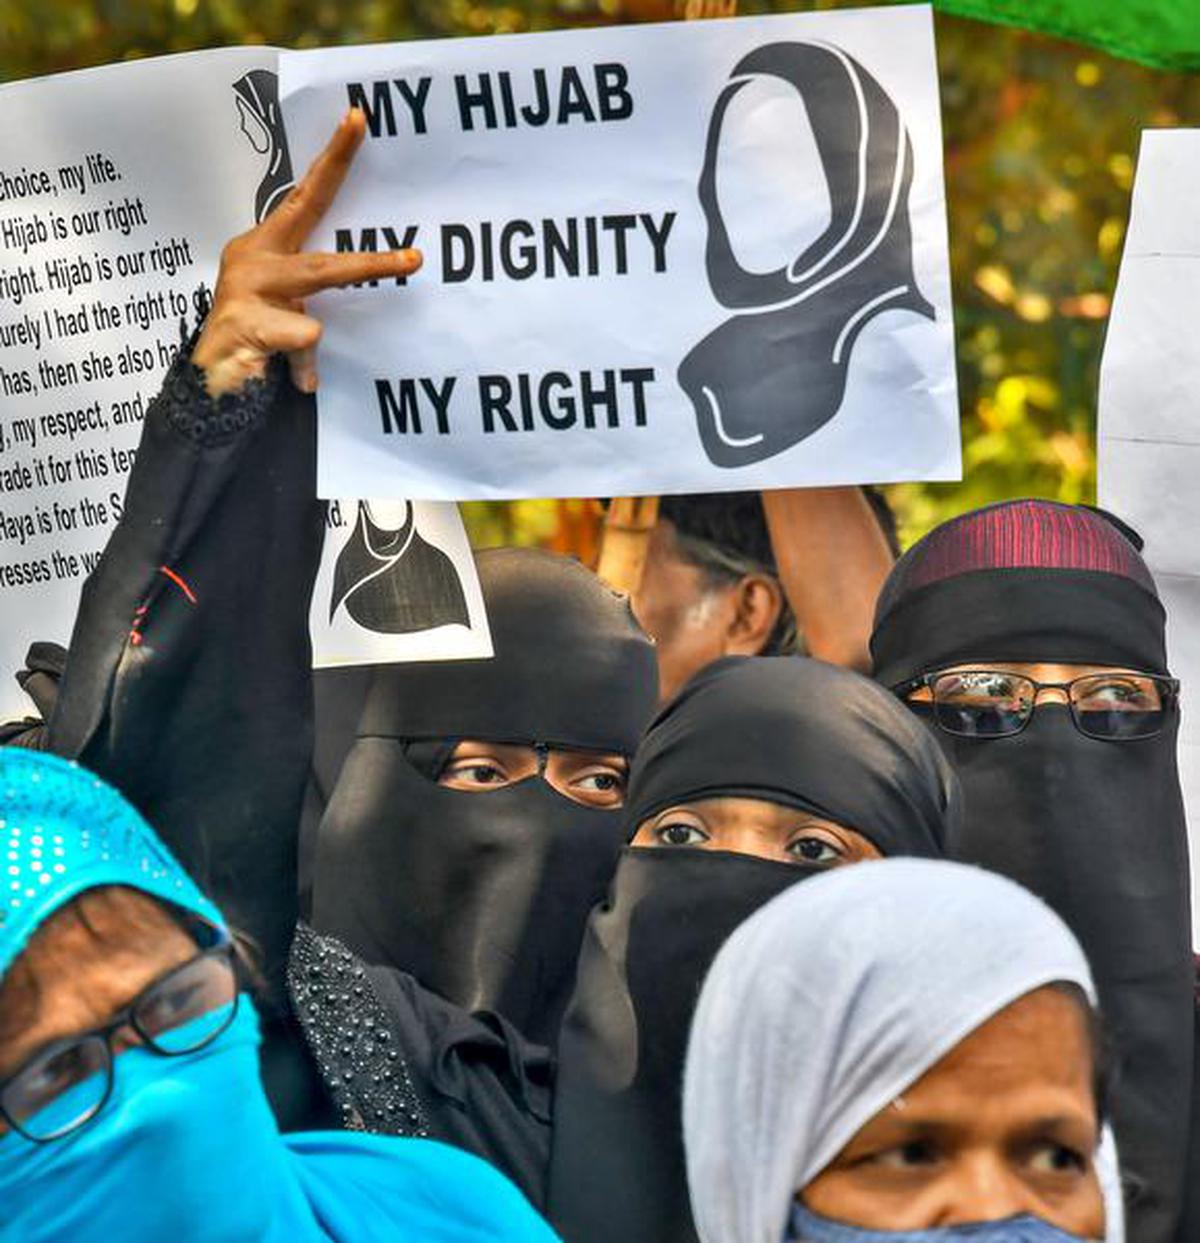 Hijab row RSS Muslim Wing backs burqa